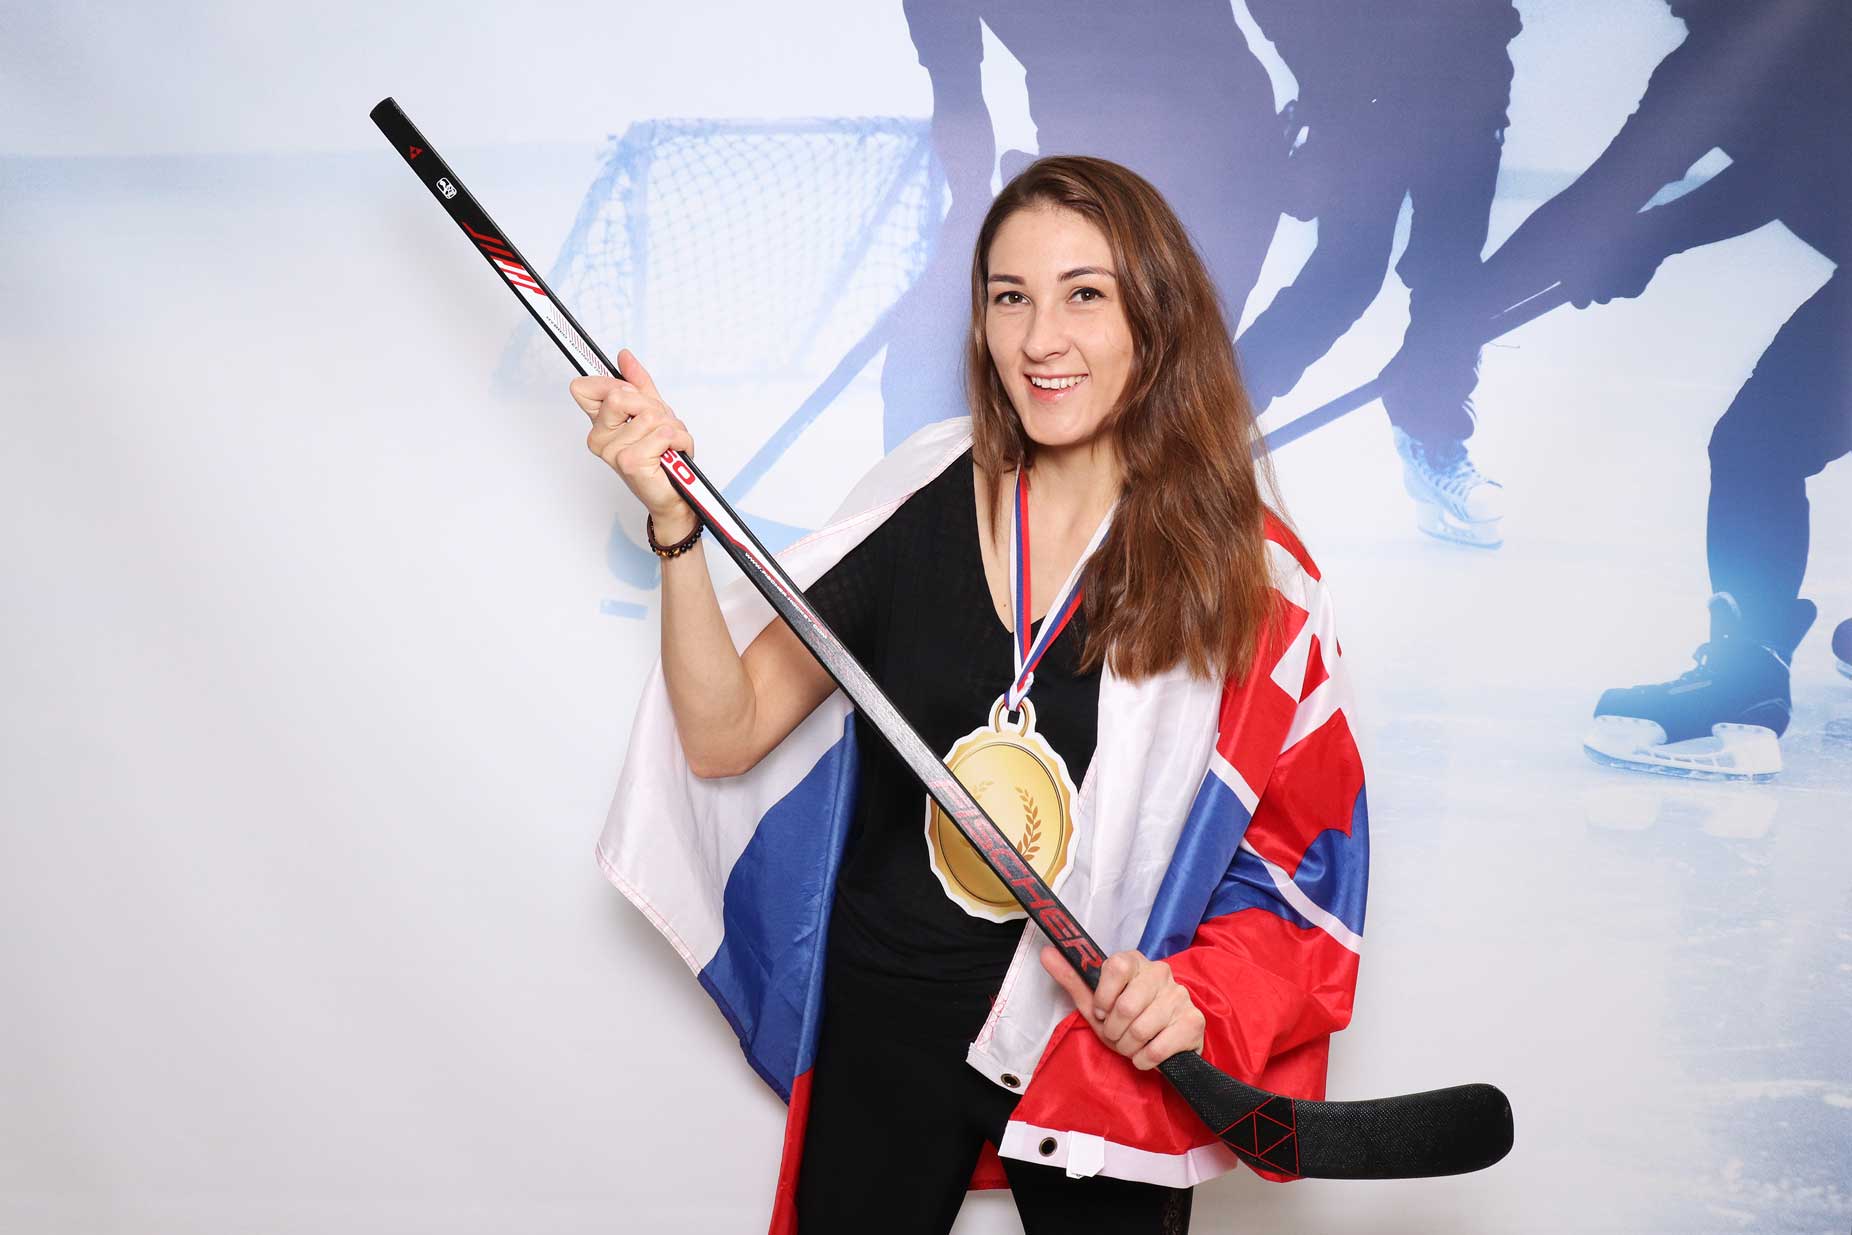 Pozadie Ice hockey - fotokútik na hokejový event.